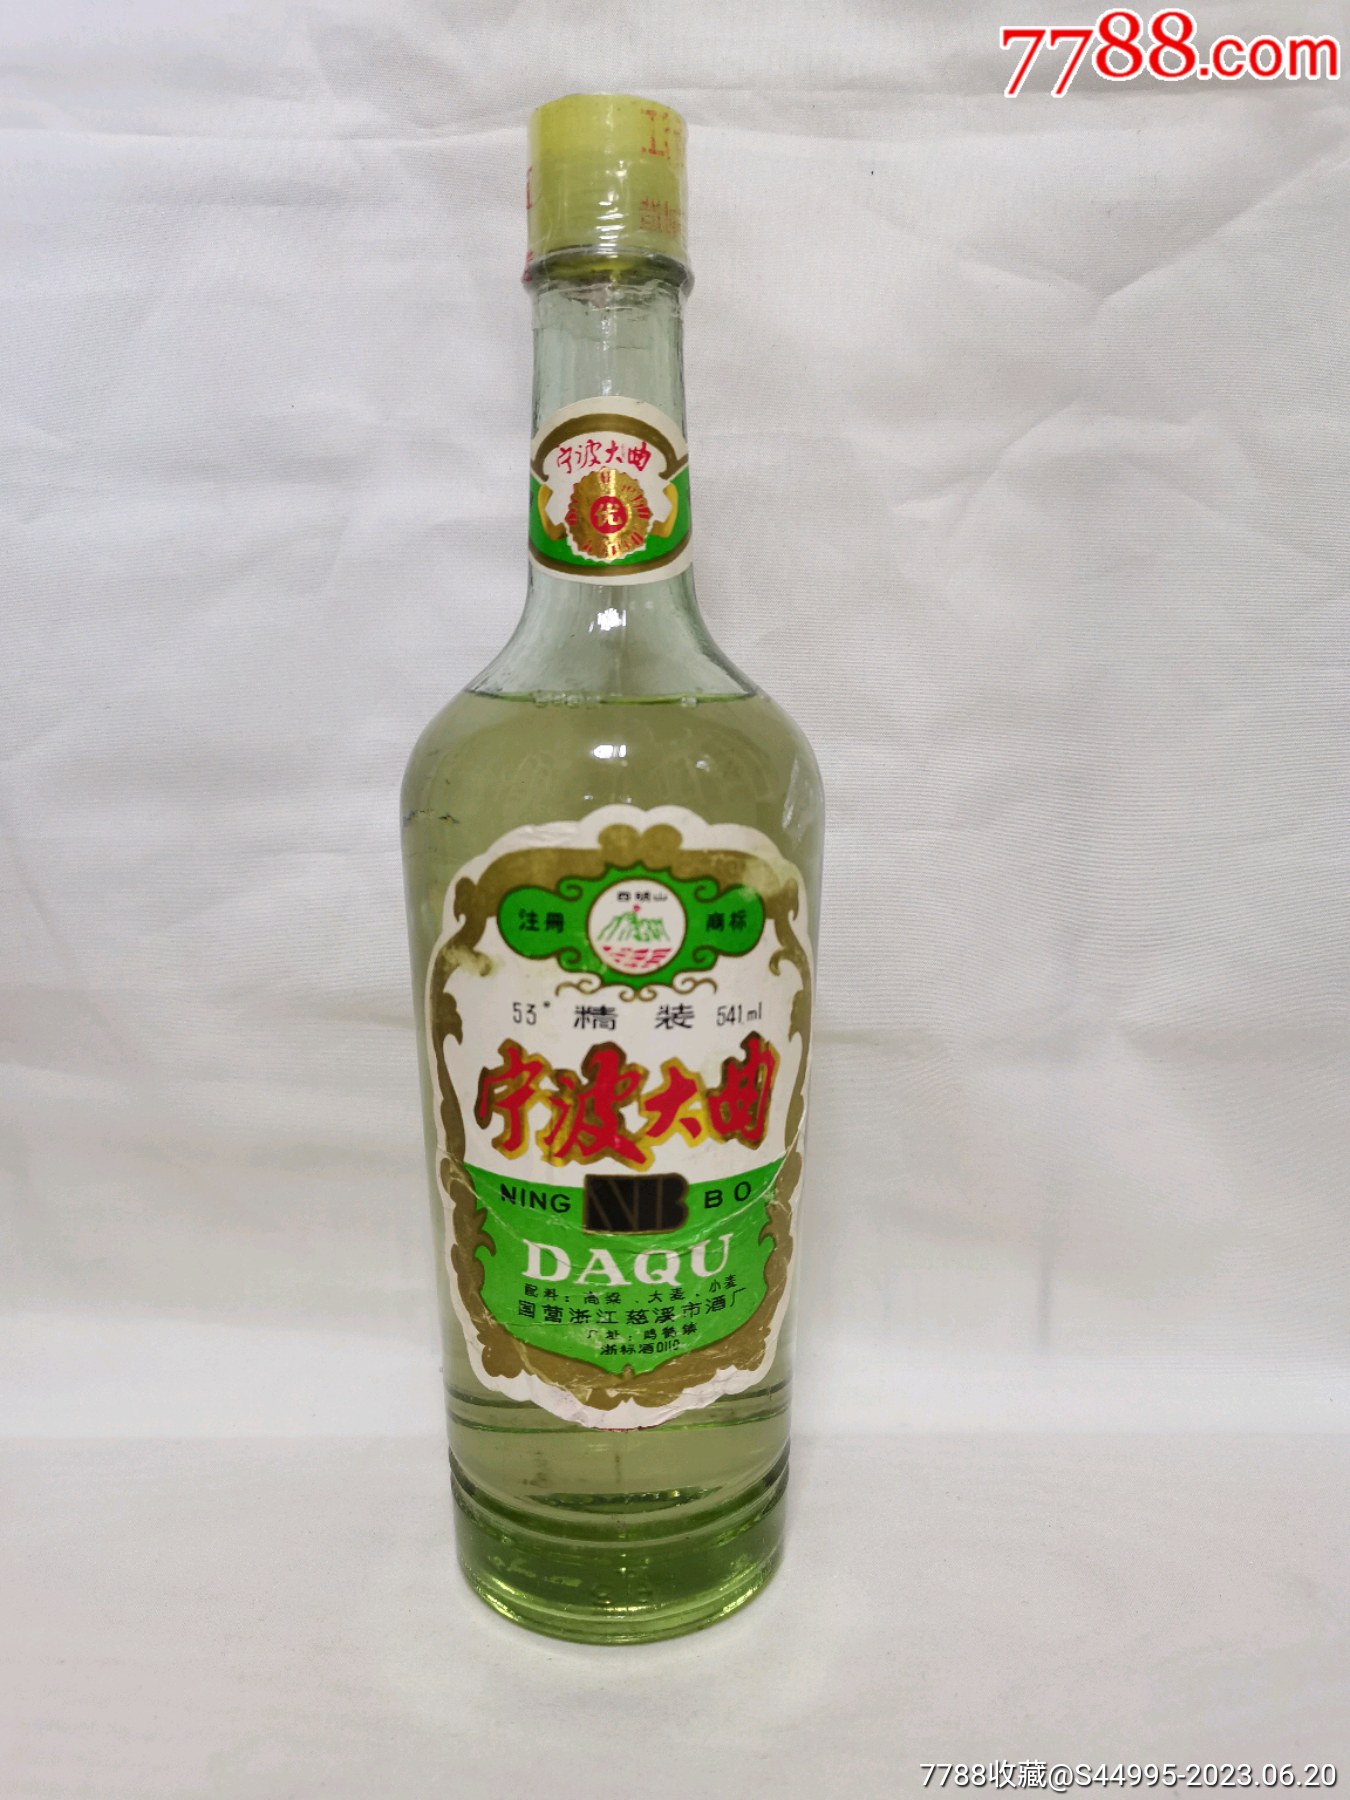 宁波大曲酒,年代:1990年;度数:53度;容量:541